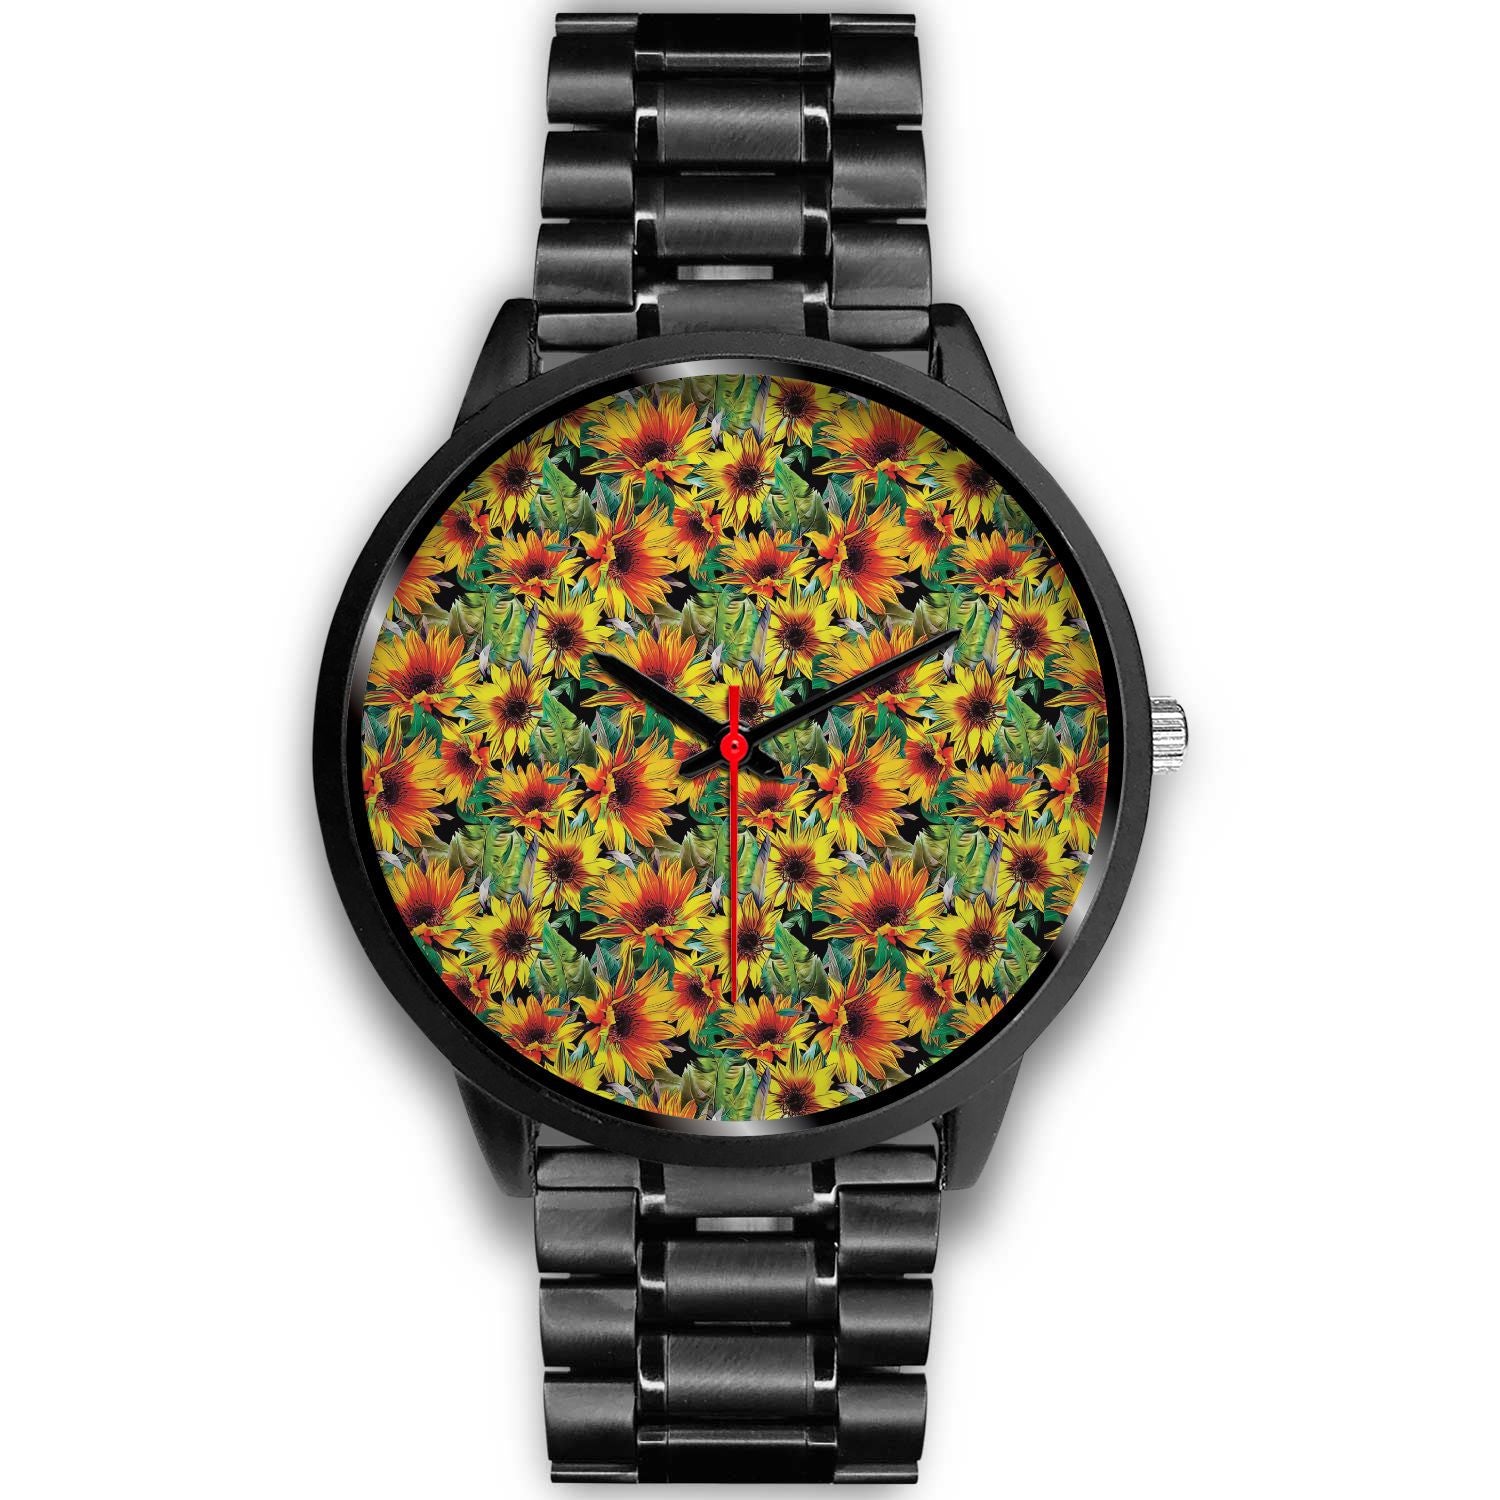 Autumn Sunflower Pattern Print Black Watch